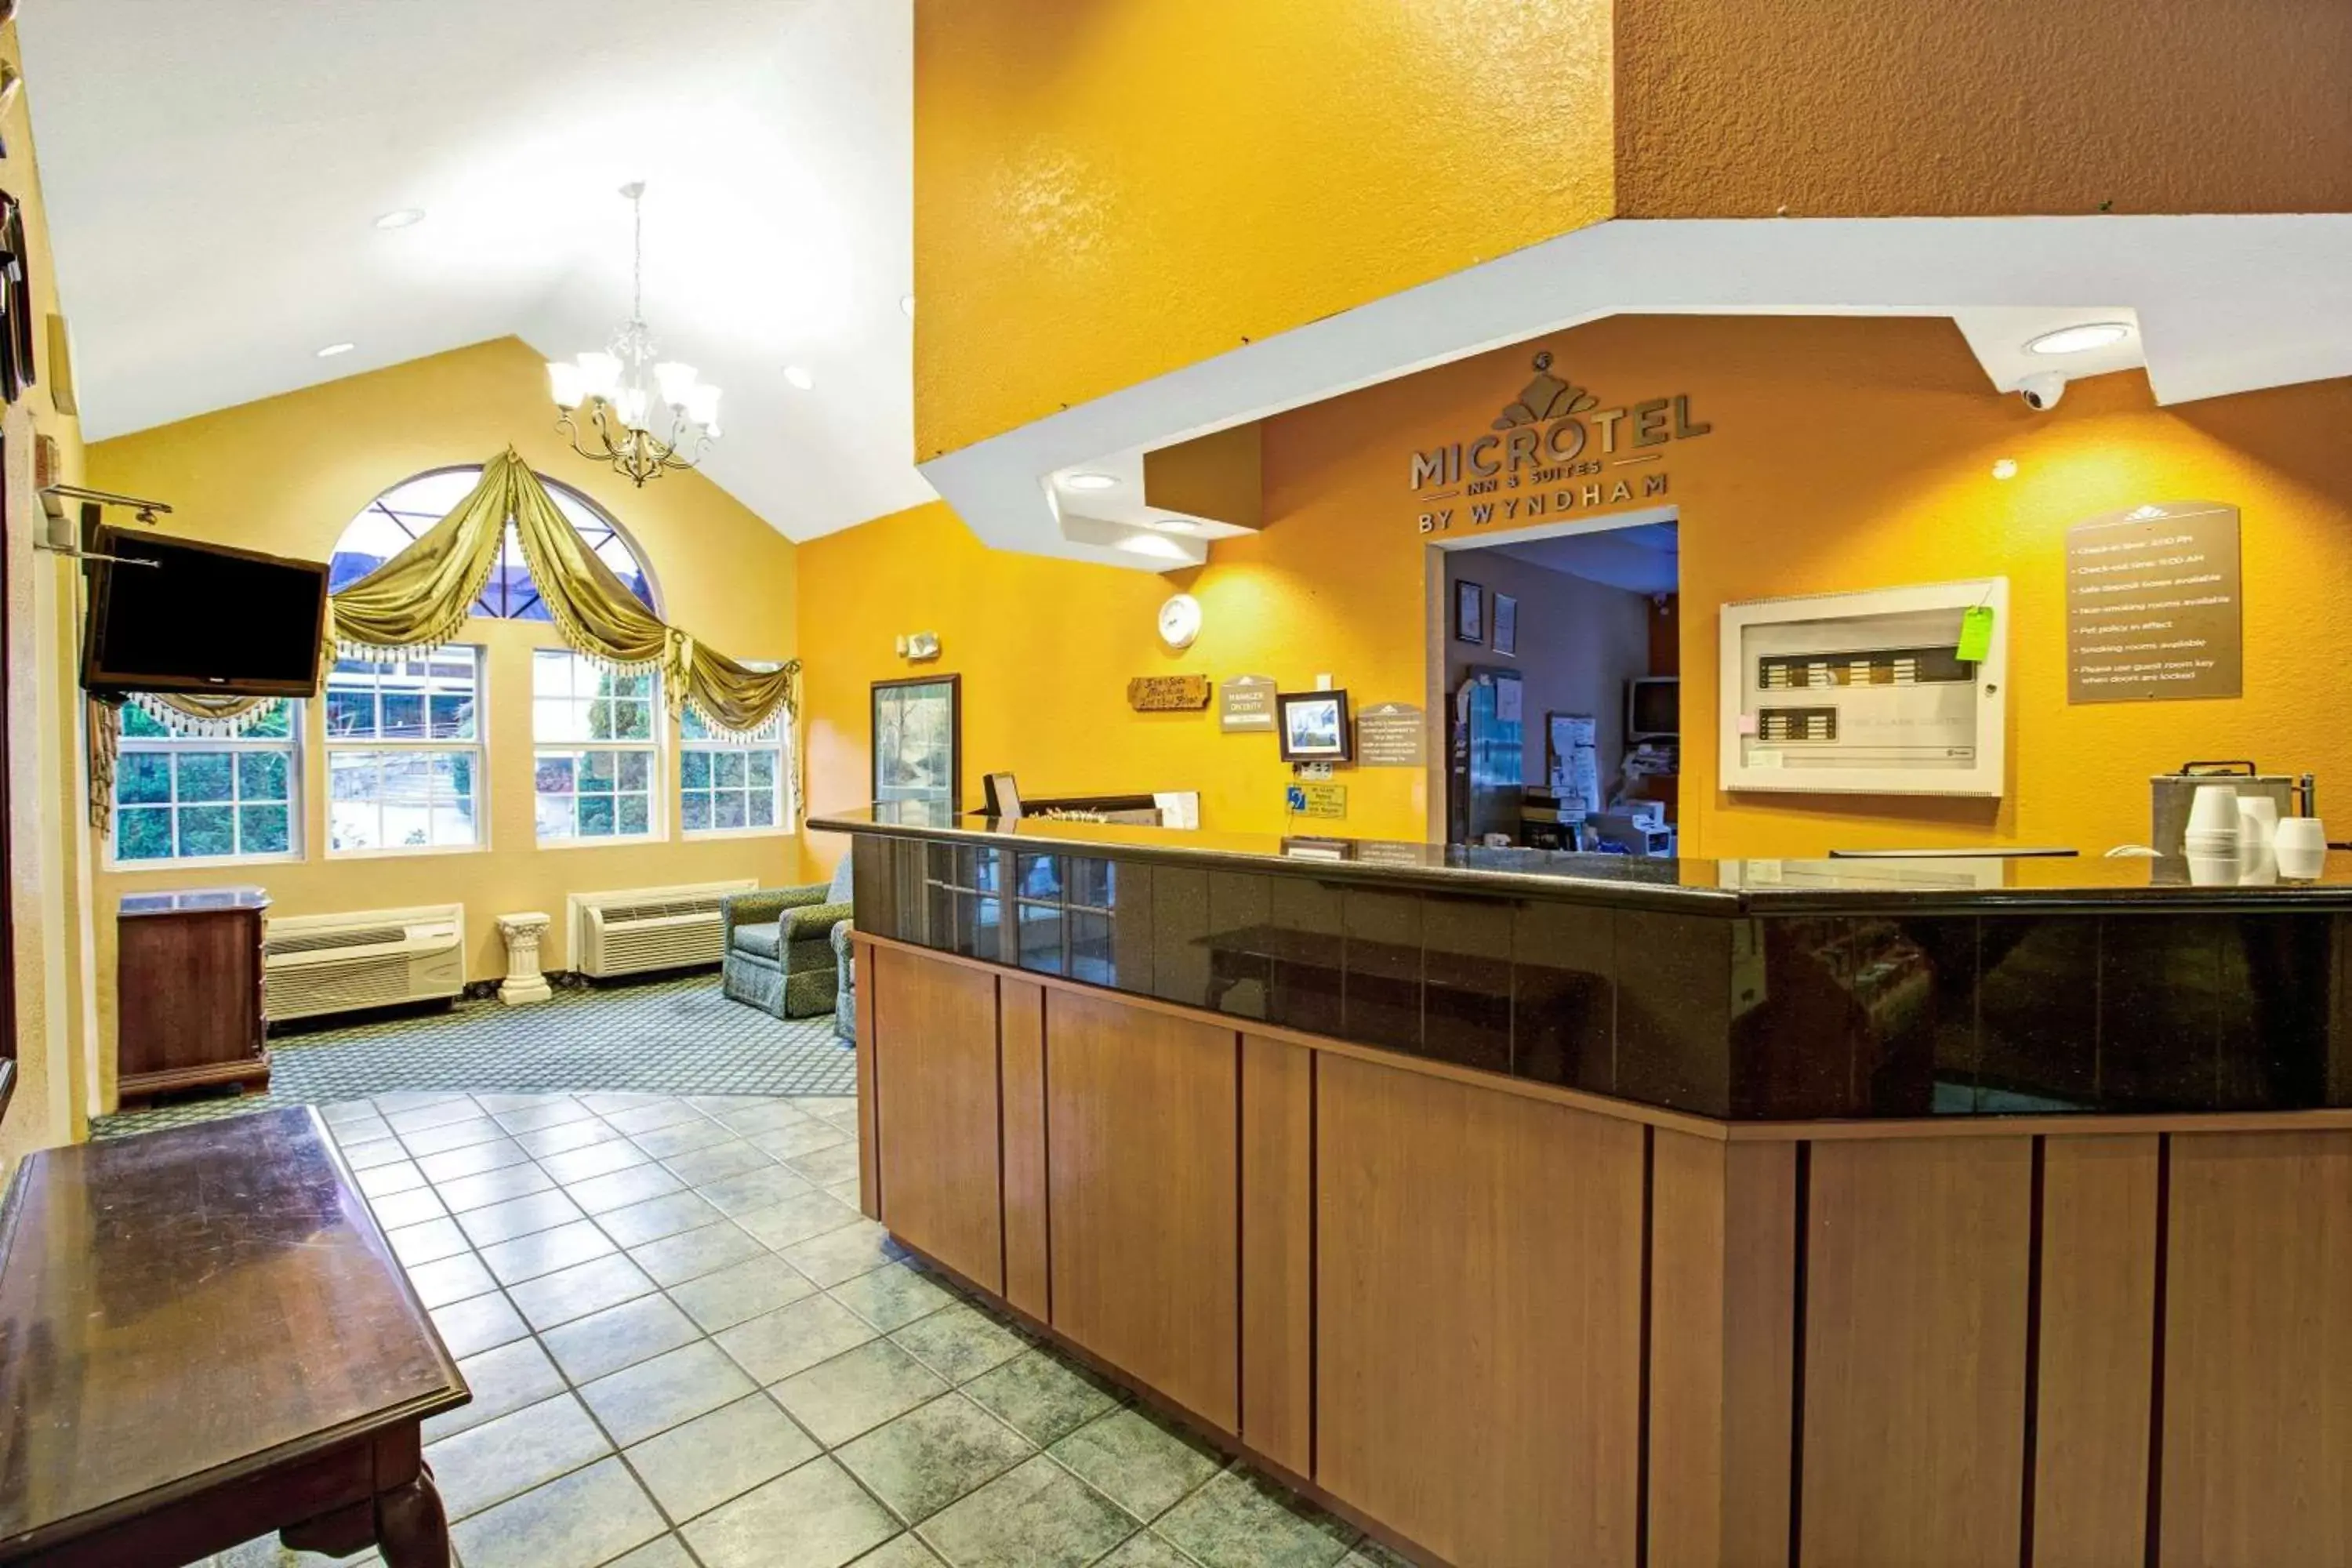 Lobby or reception, Lobby/Reception in Microtel Inn & Suites by Wyndham Gatlinburg